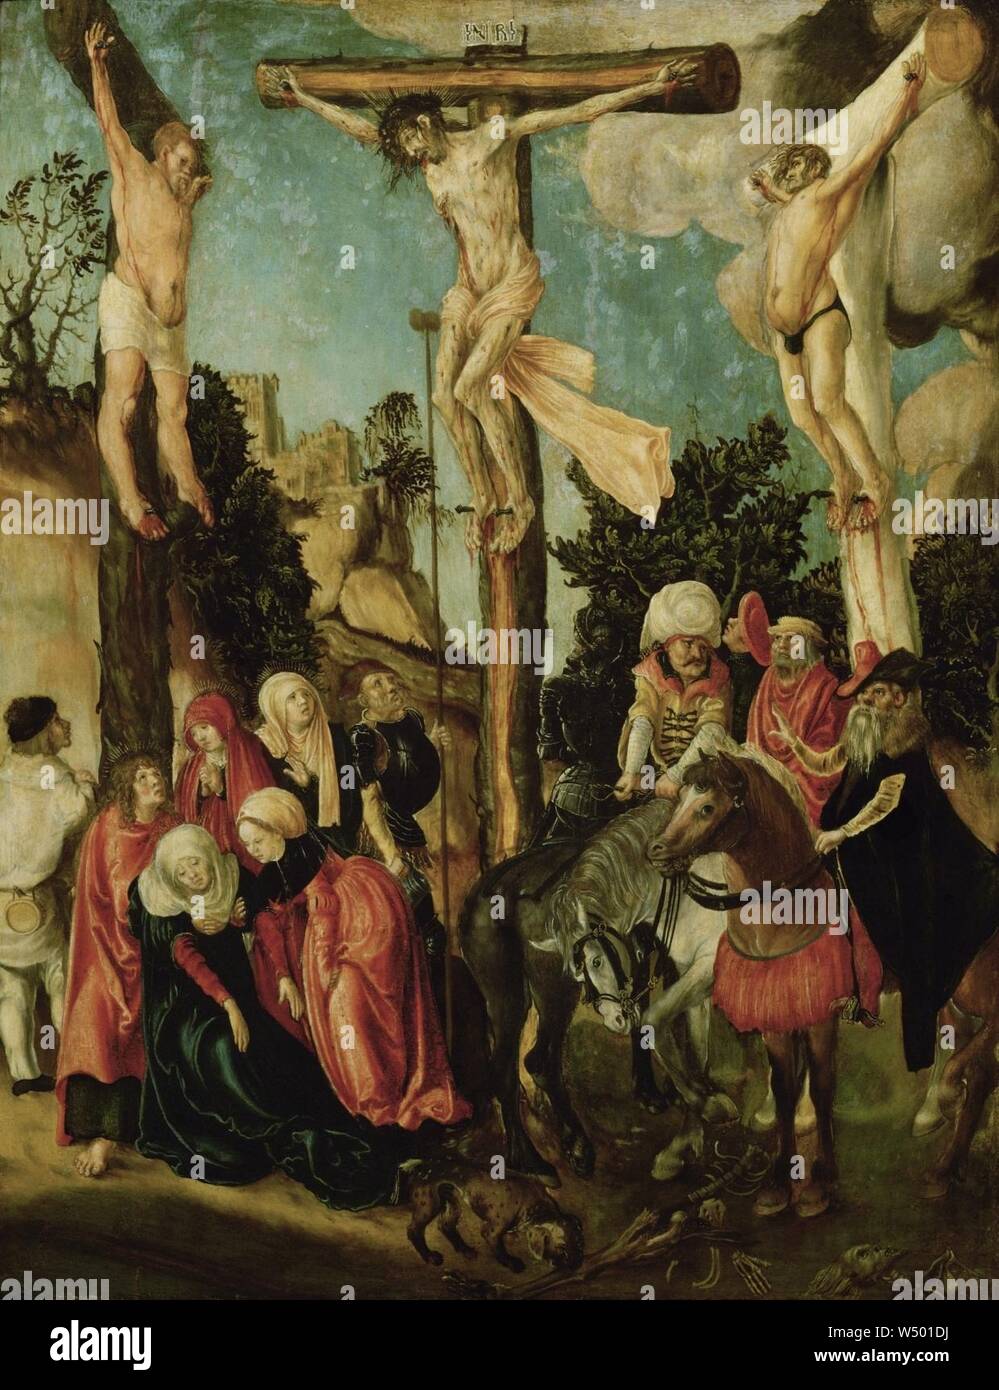 Lucas Cranach d.Ä. - Kreuzigung Christi Foto Stock